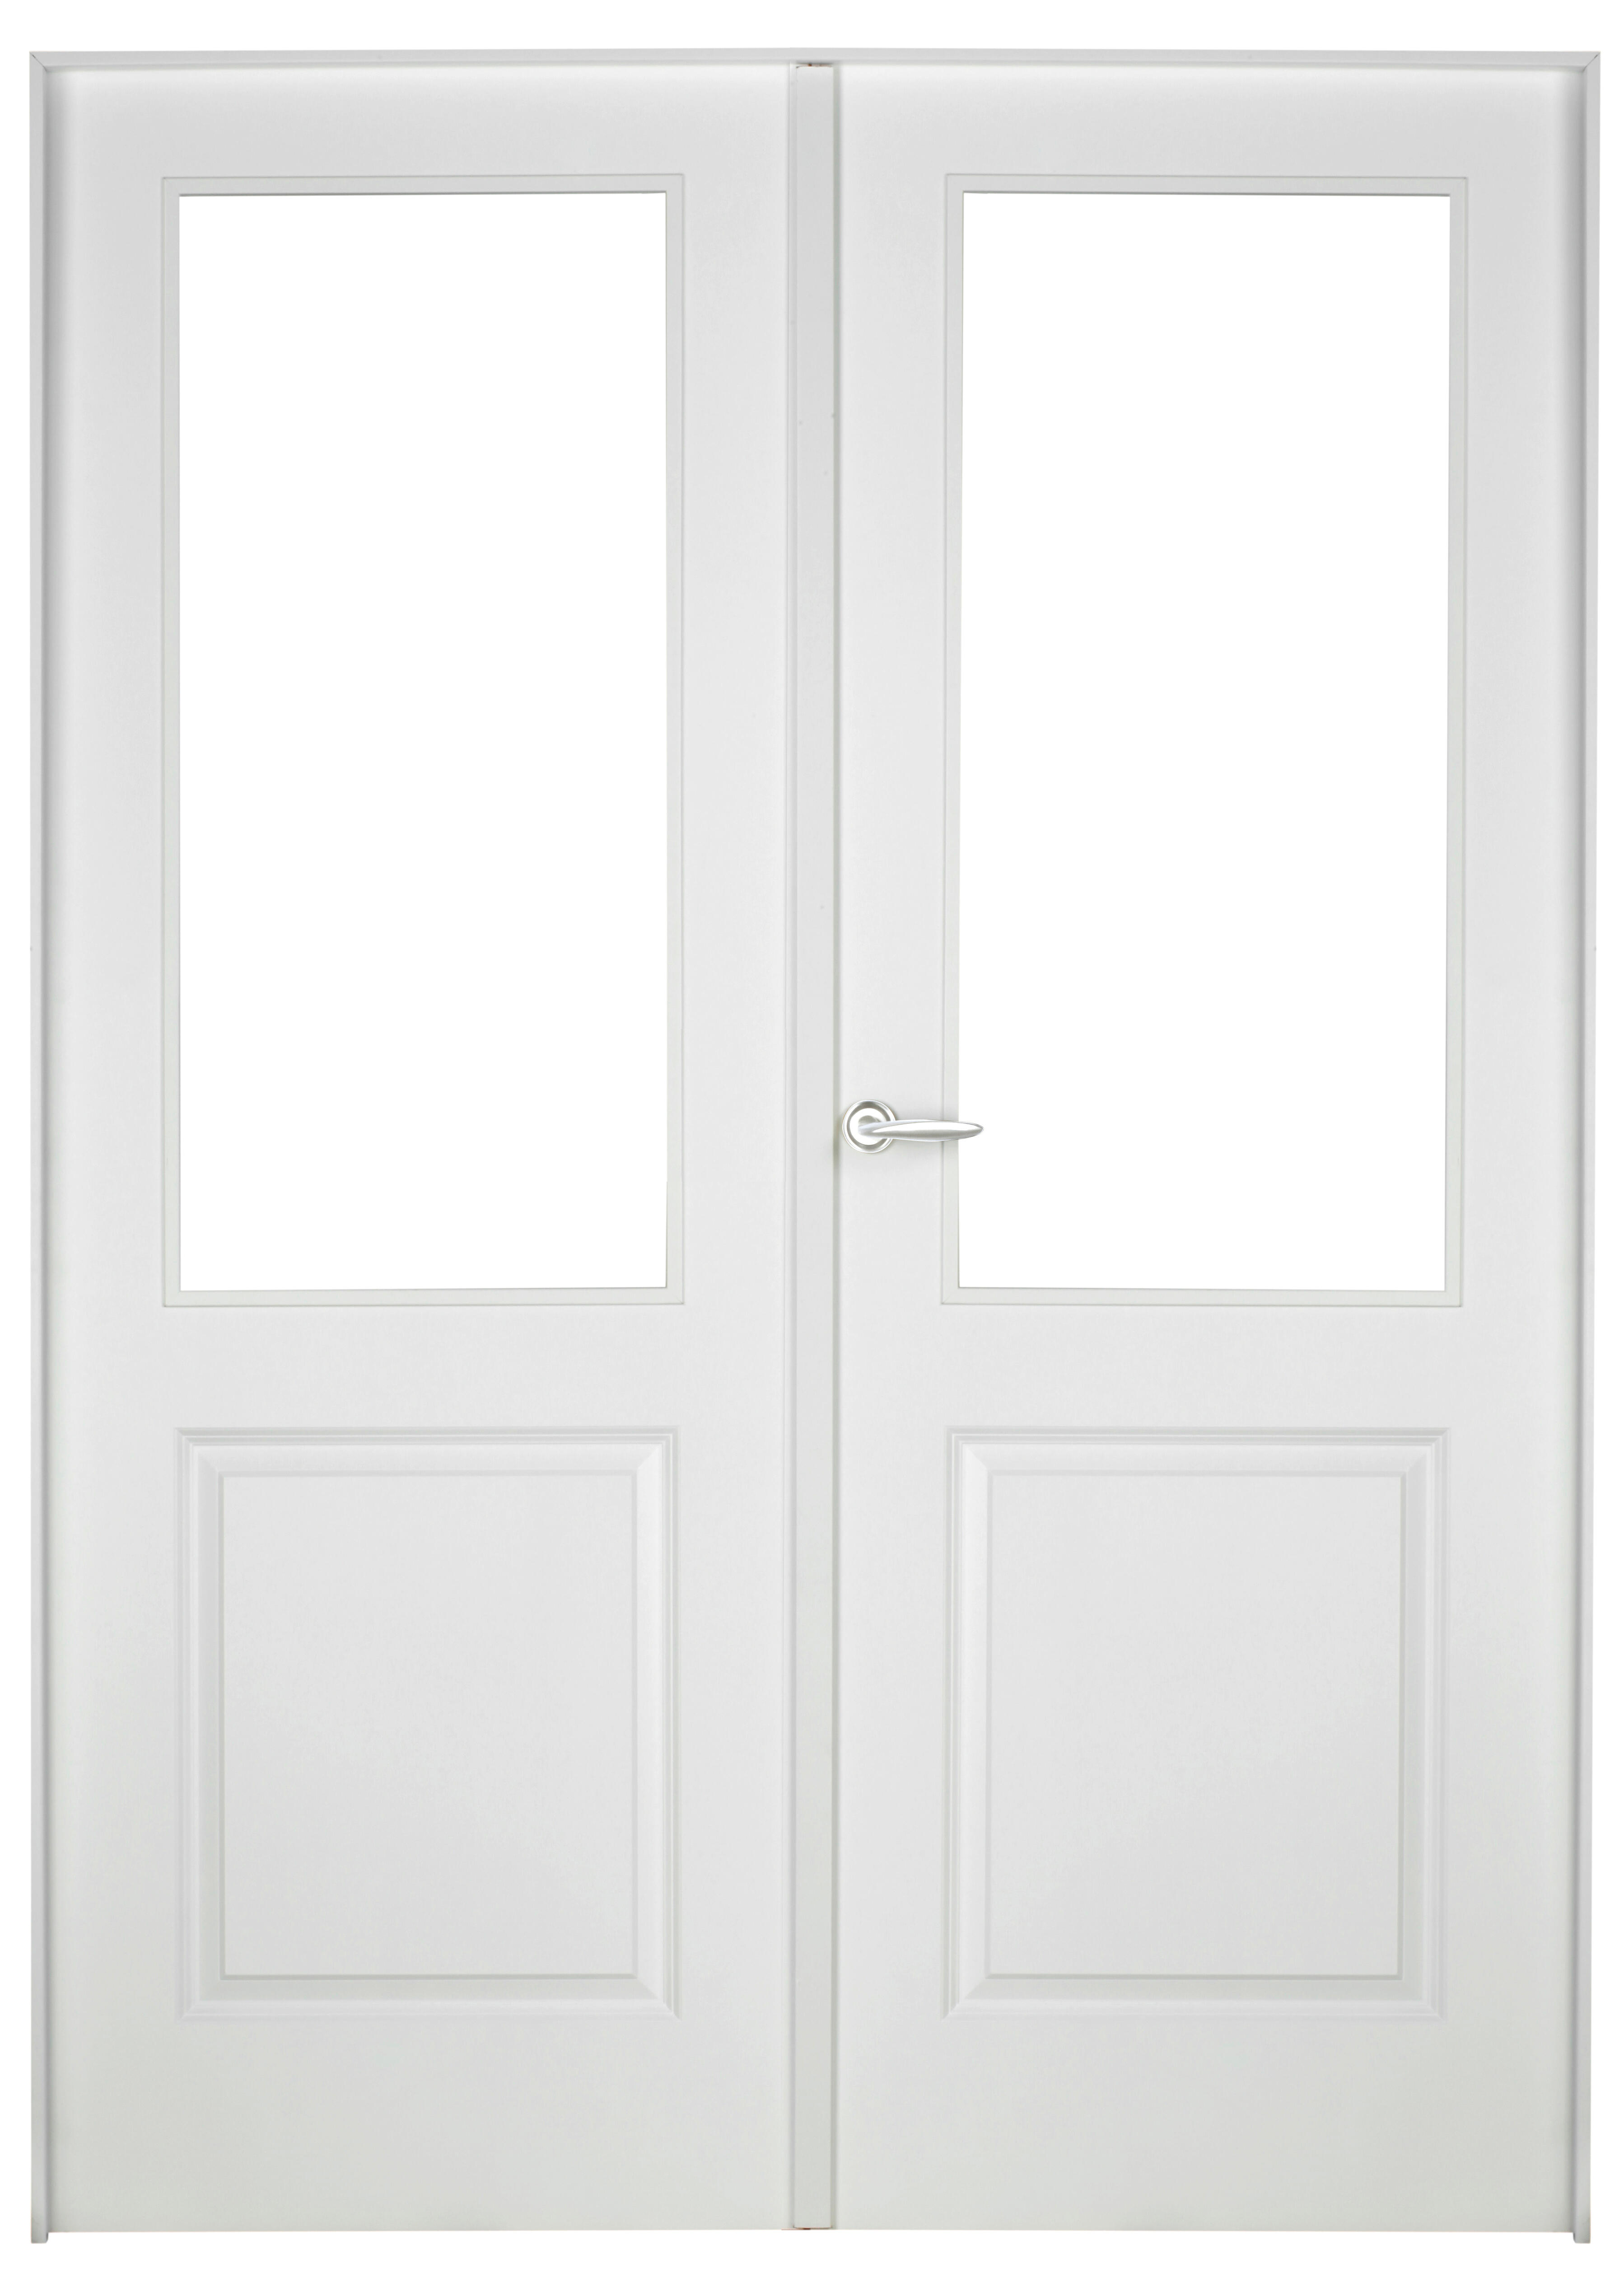 Puerta abatible bonn blanca aero blanco derecha con cristal de 90x30 y 125cm